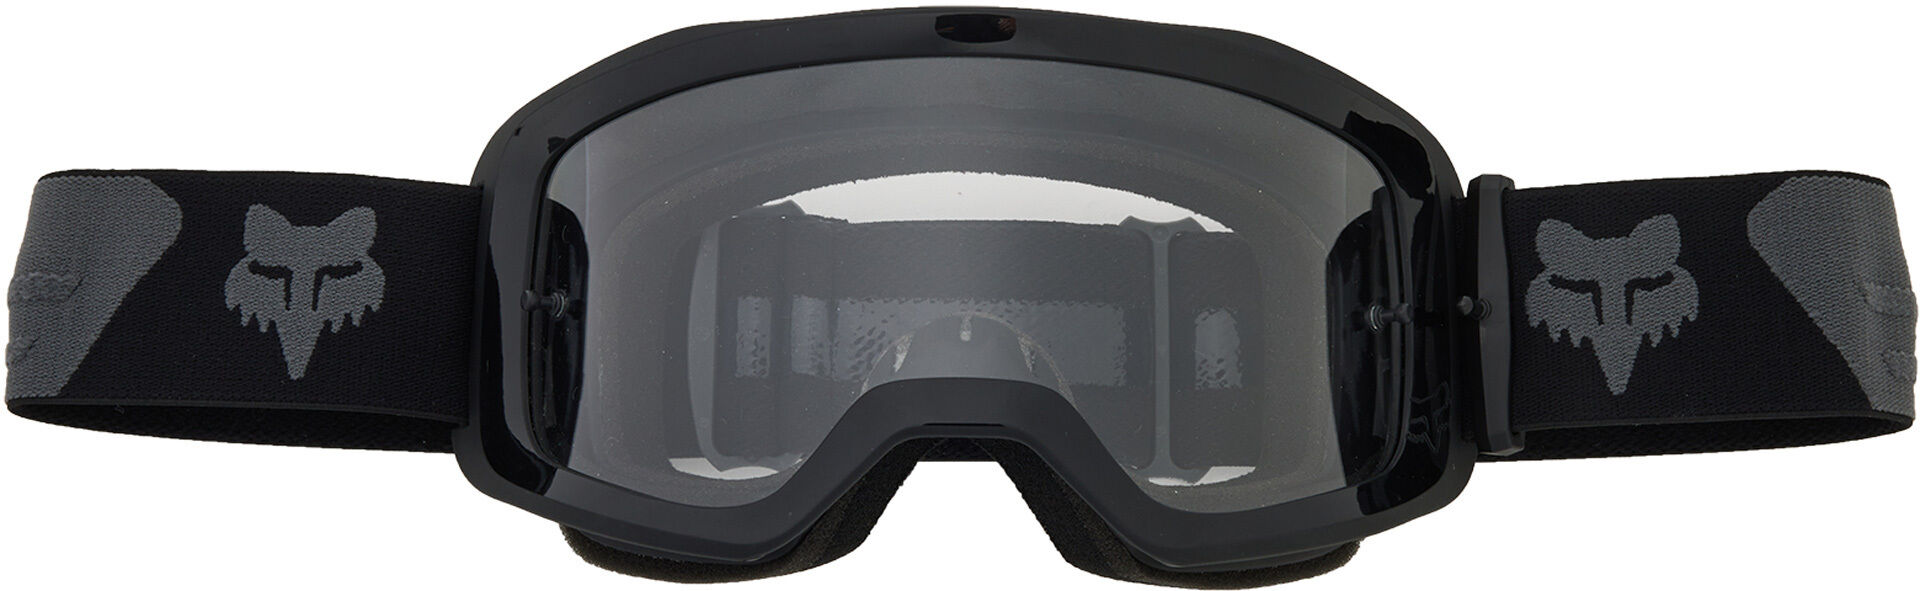 Fox Main Core Gafas de motocross - Negro Gris (un tamaño)